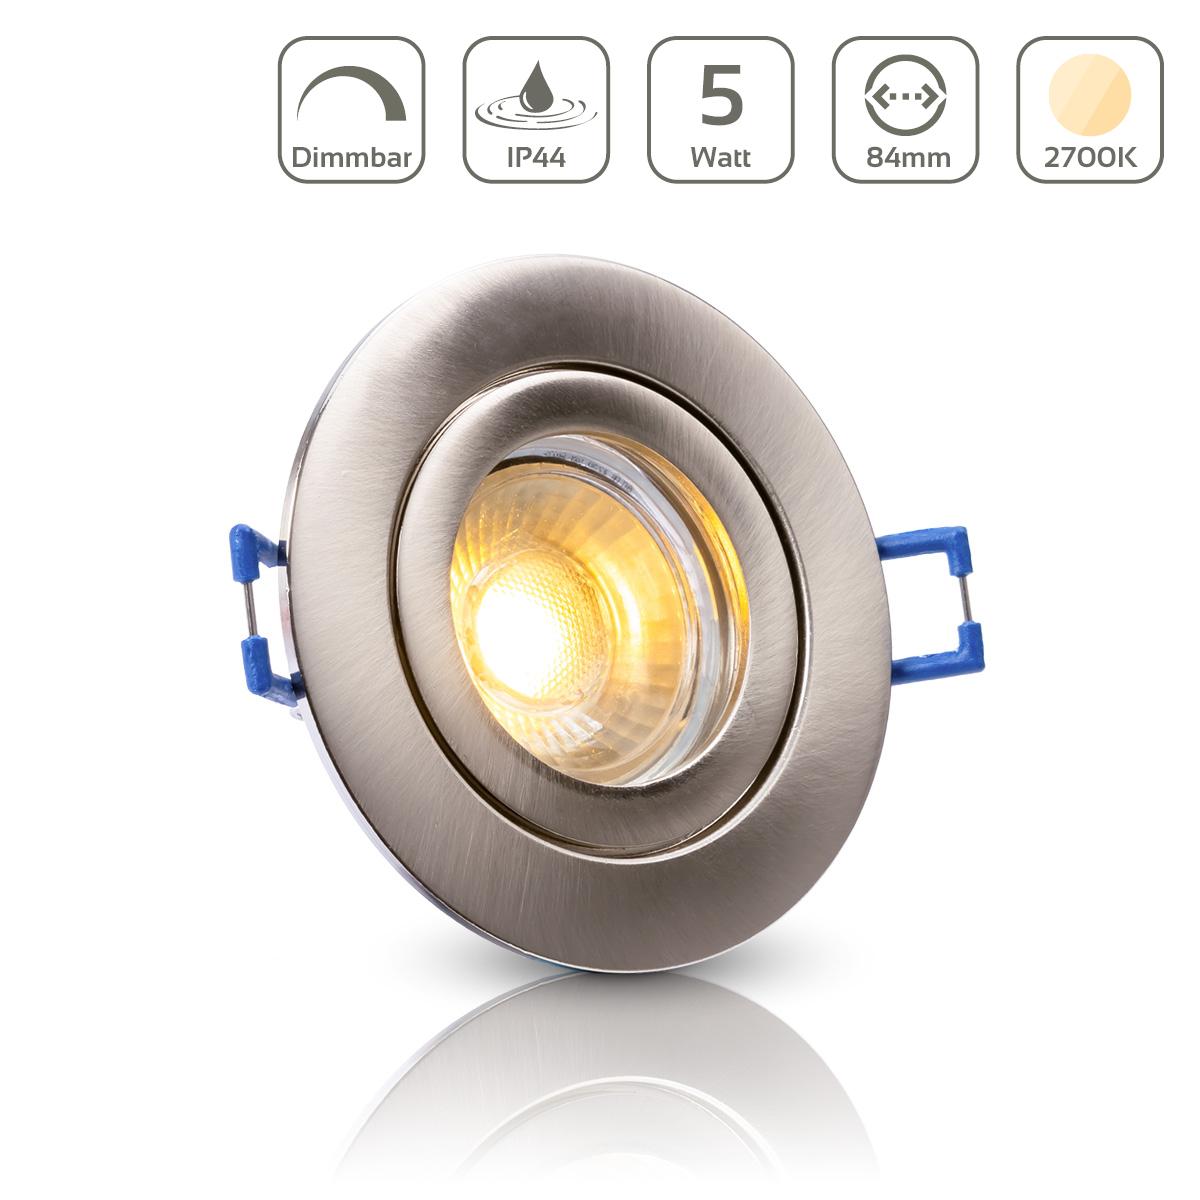 Einbauspot IP44 rund - Farbe: Silber gebürstet - LED Leuchtmittel:  GU10 5W warmweiß dimmbar